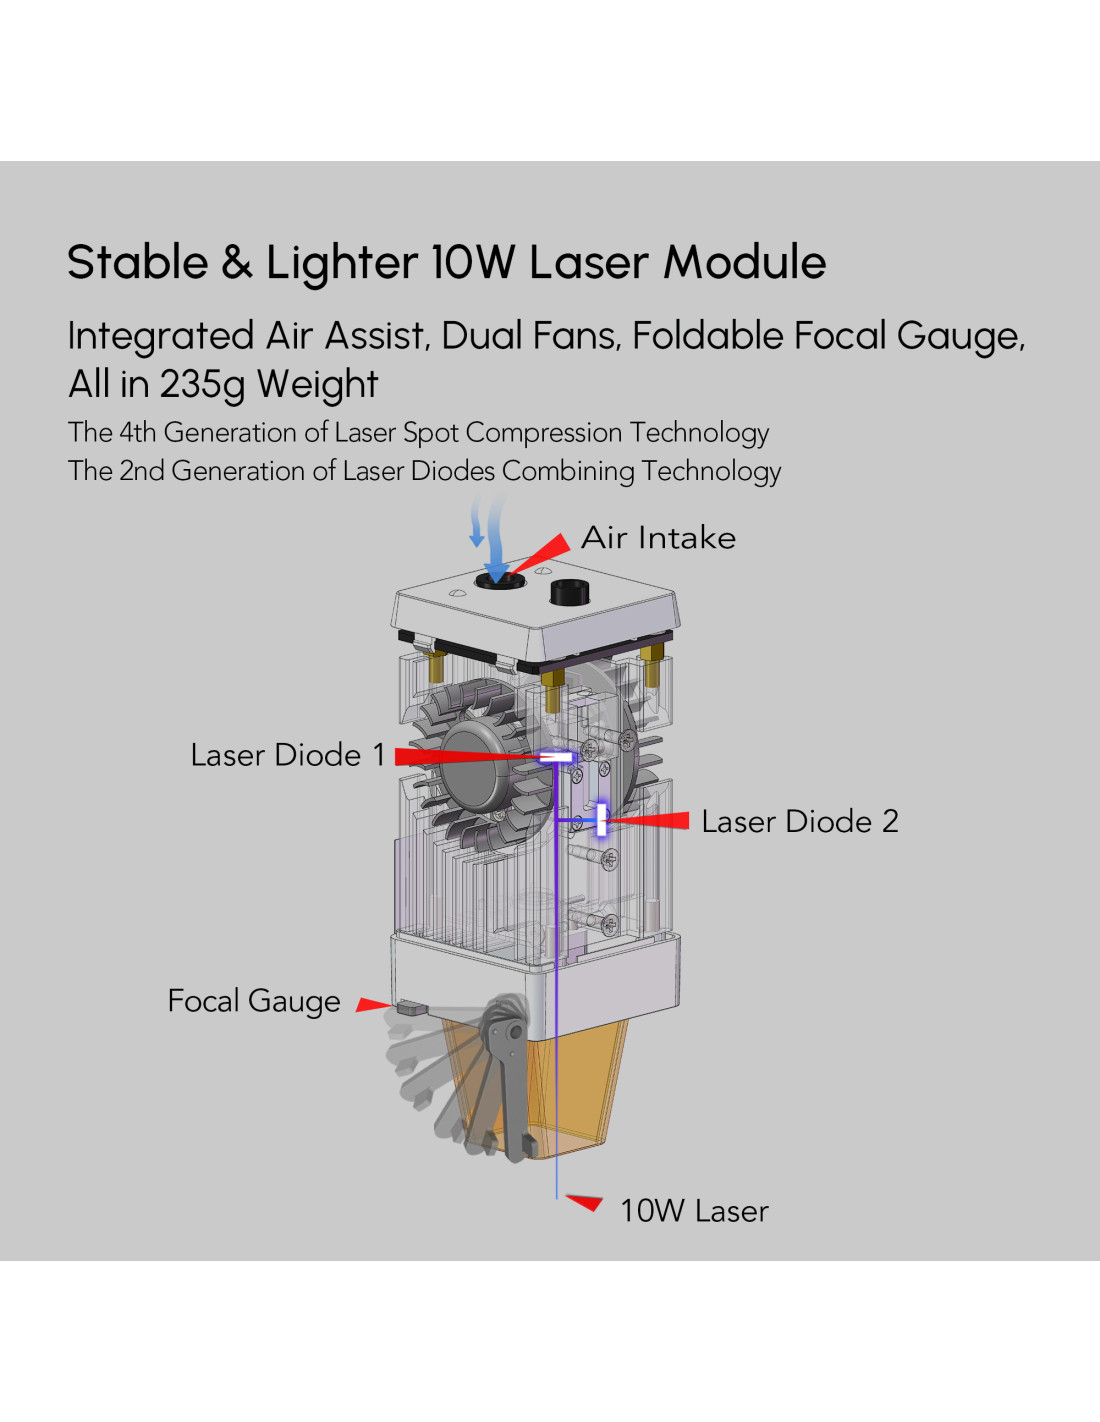 Ortur Laser Master 3 - Lasergravur- und Laserschneidemaschine - 10W